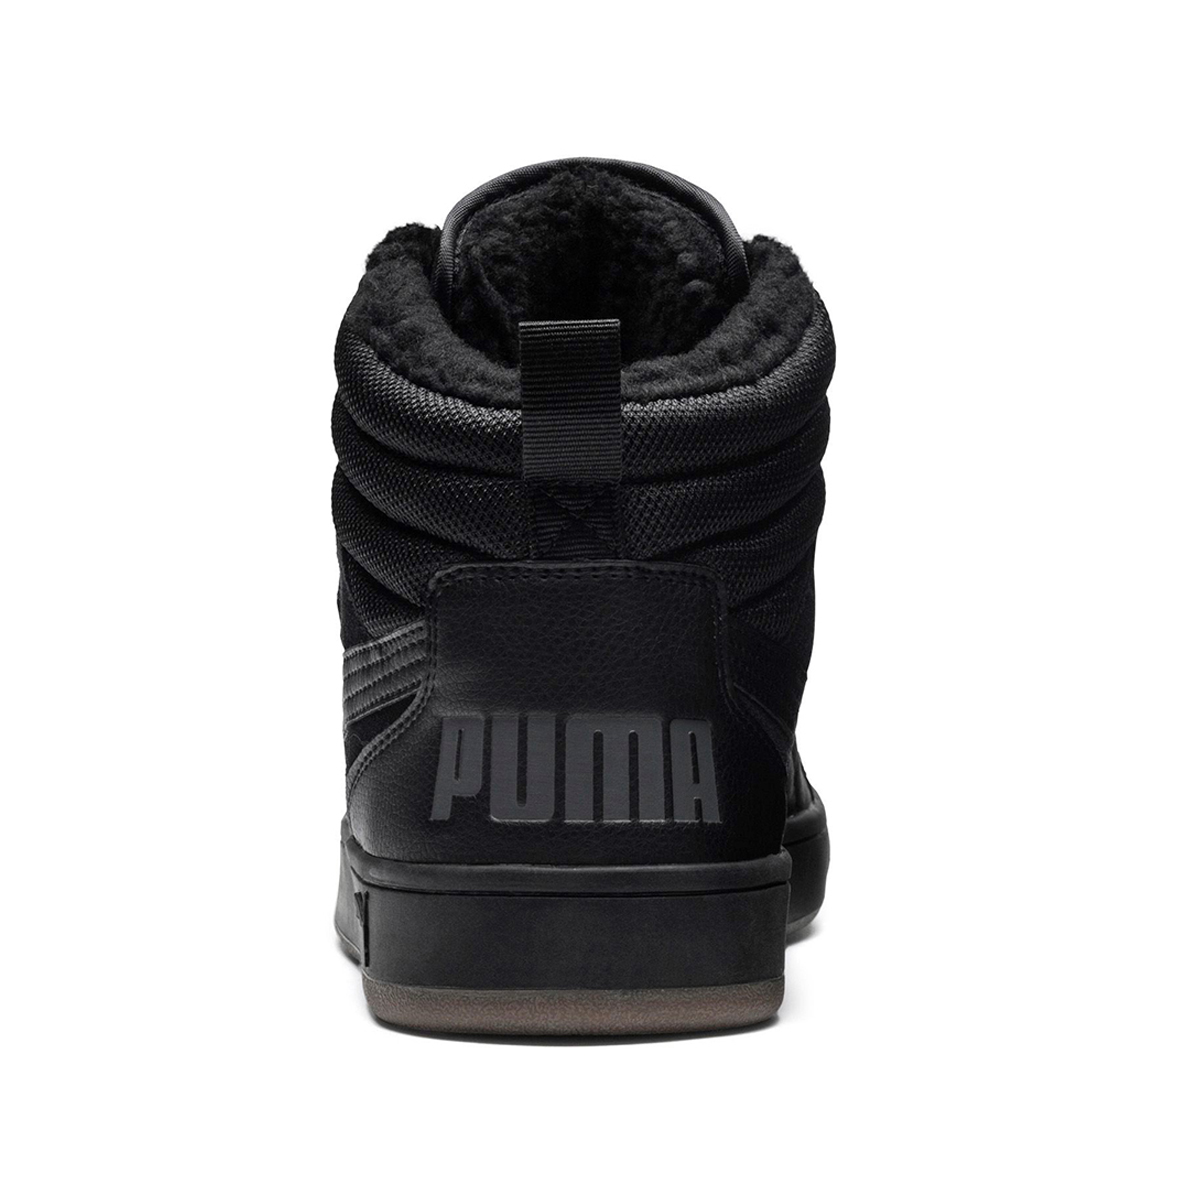 Puma Rebound Street SD Fur Winterstiefel Boots Herren schwarz gefüttert warm 366994